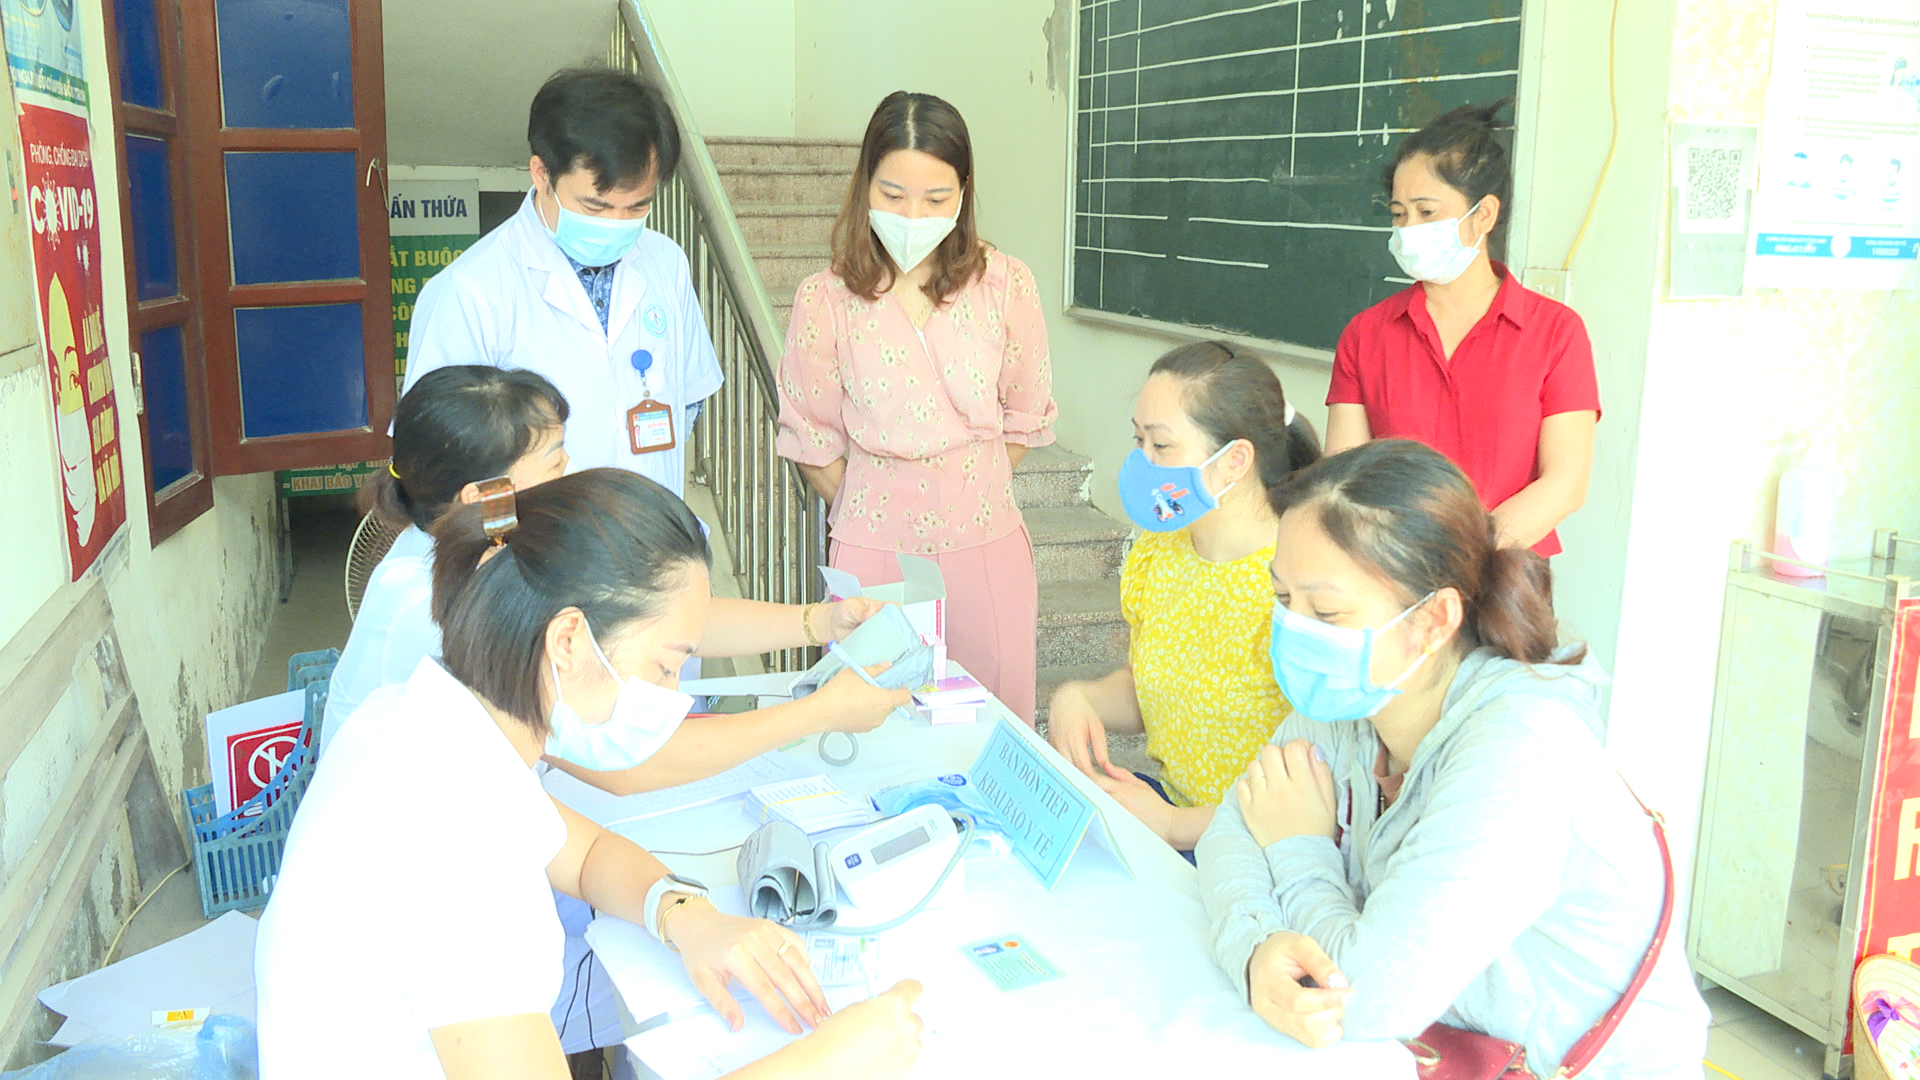 Hội LHPN thị trấn Thứa phối hợp với Trạm Y tế tổ chức khám tư vấn miễn phí cho phụ nữ.mp4